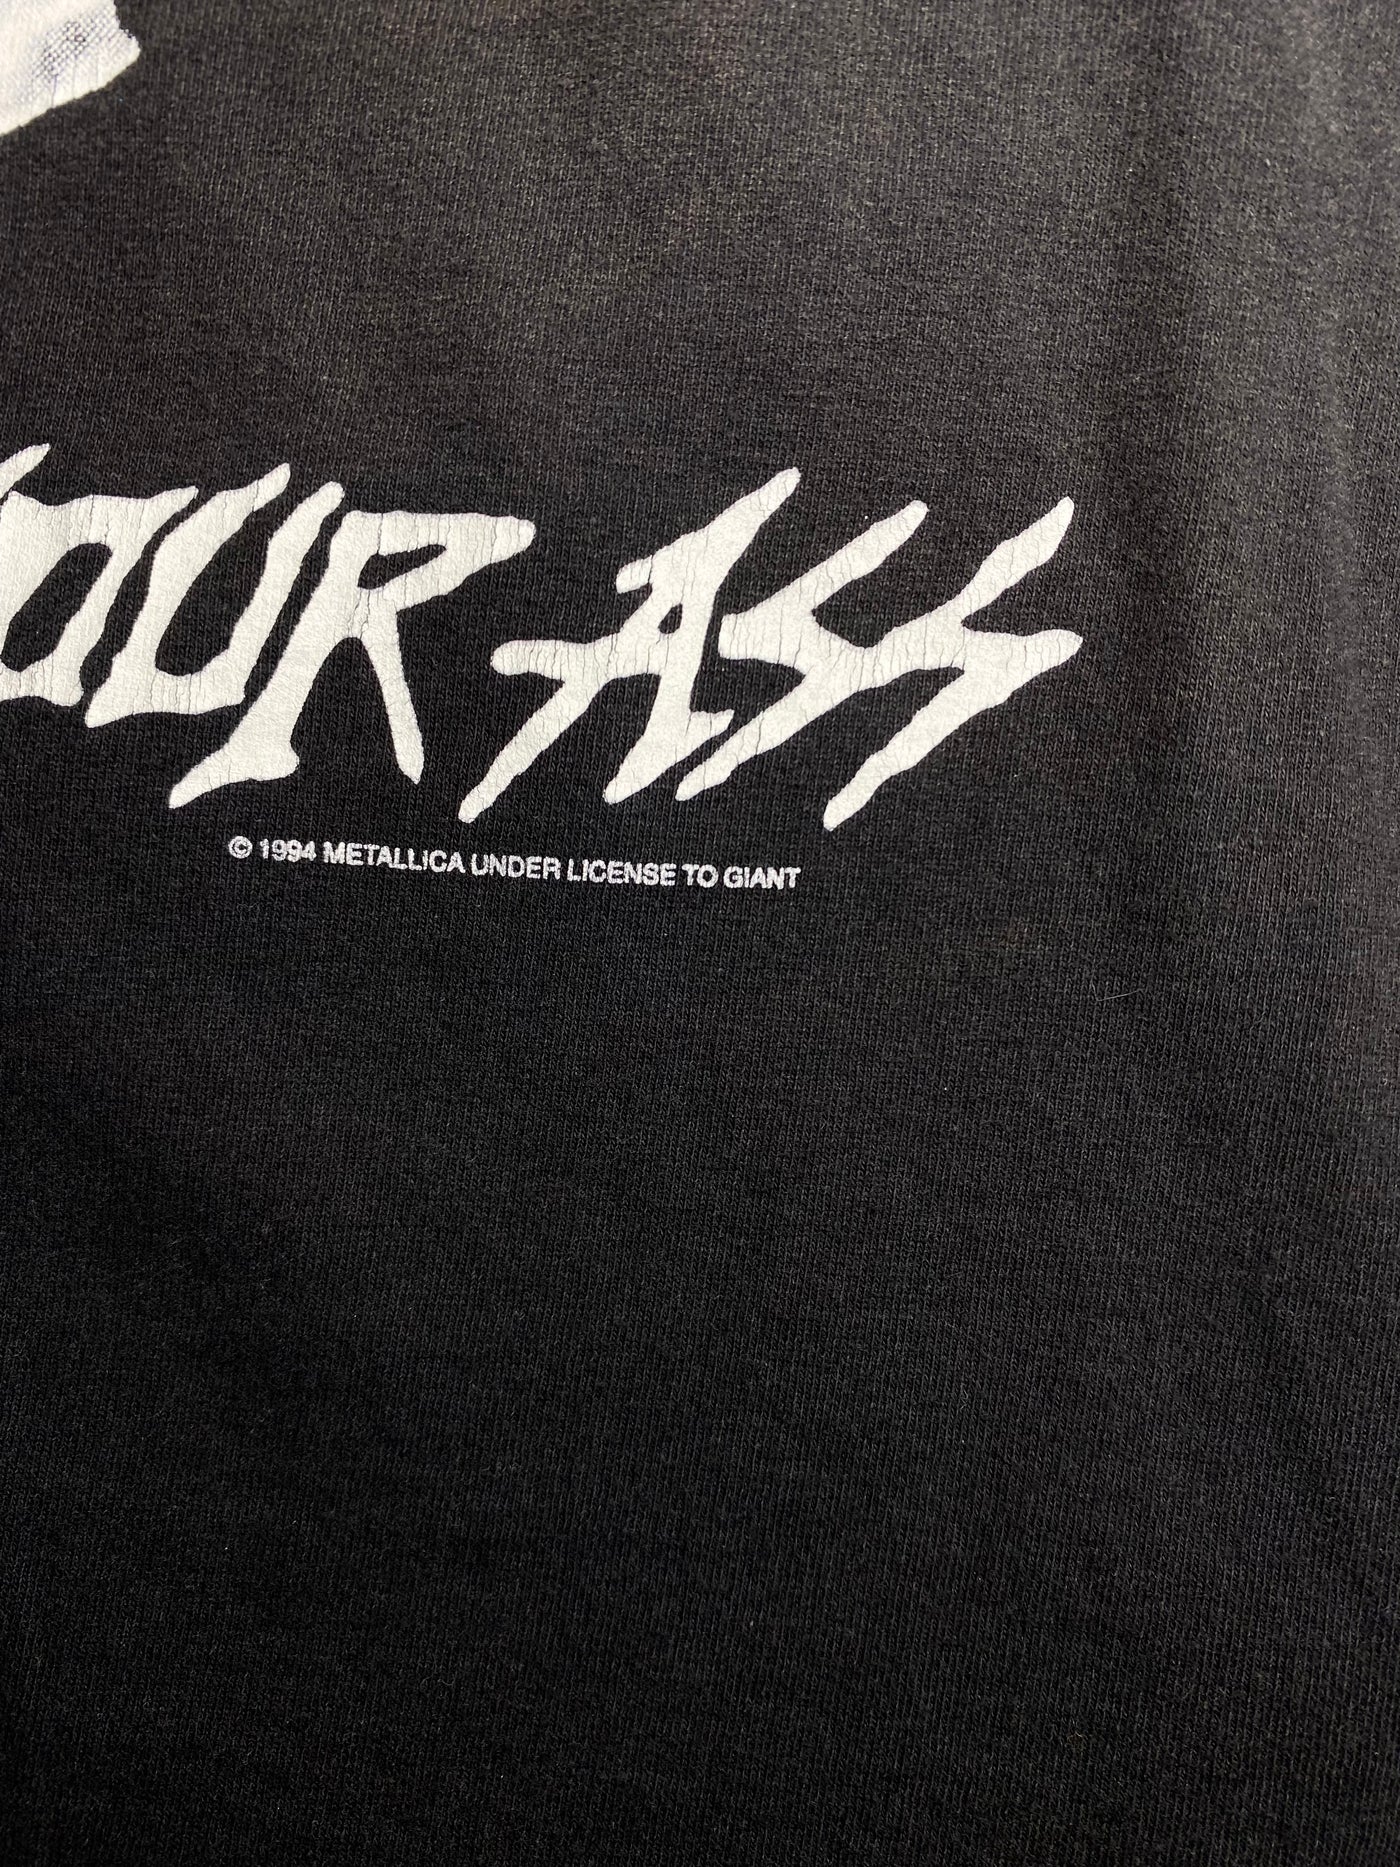 Vintage 1994 ‘Metal up your Ass’ Metallica T-Shirt